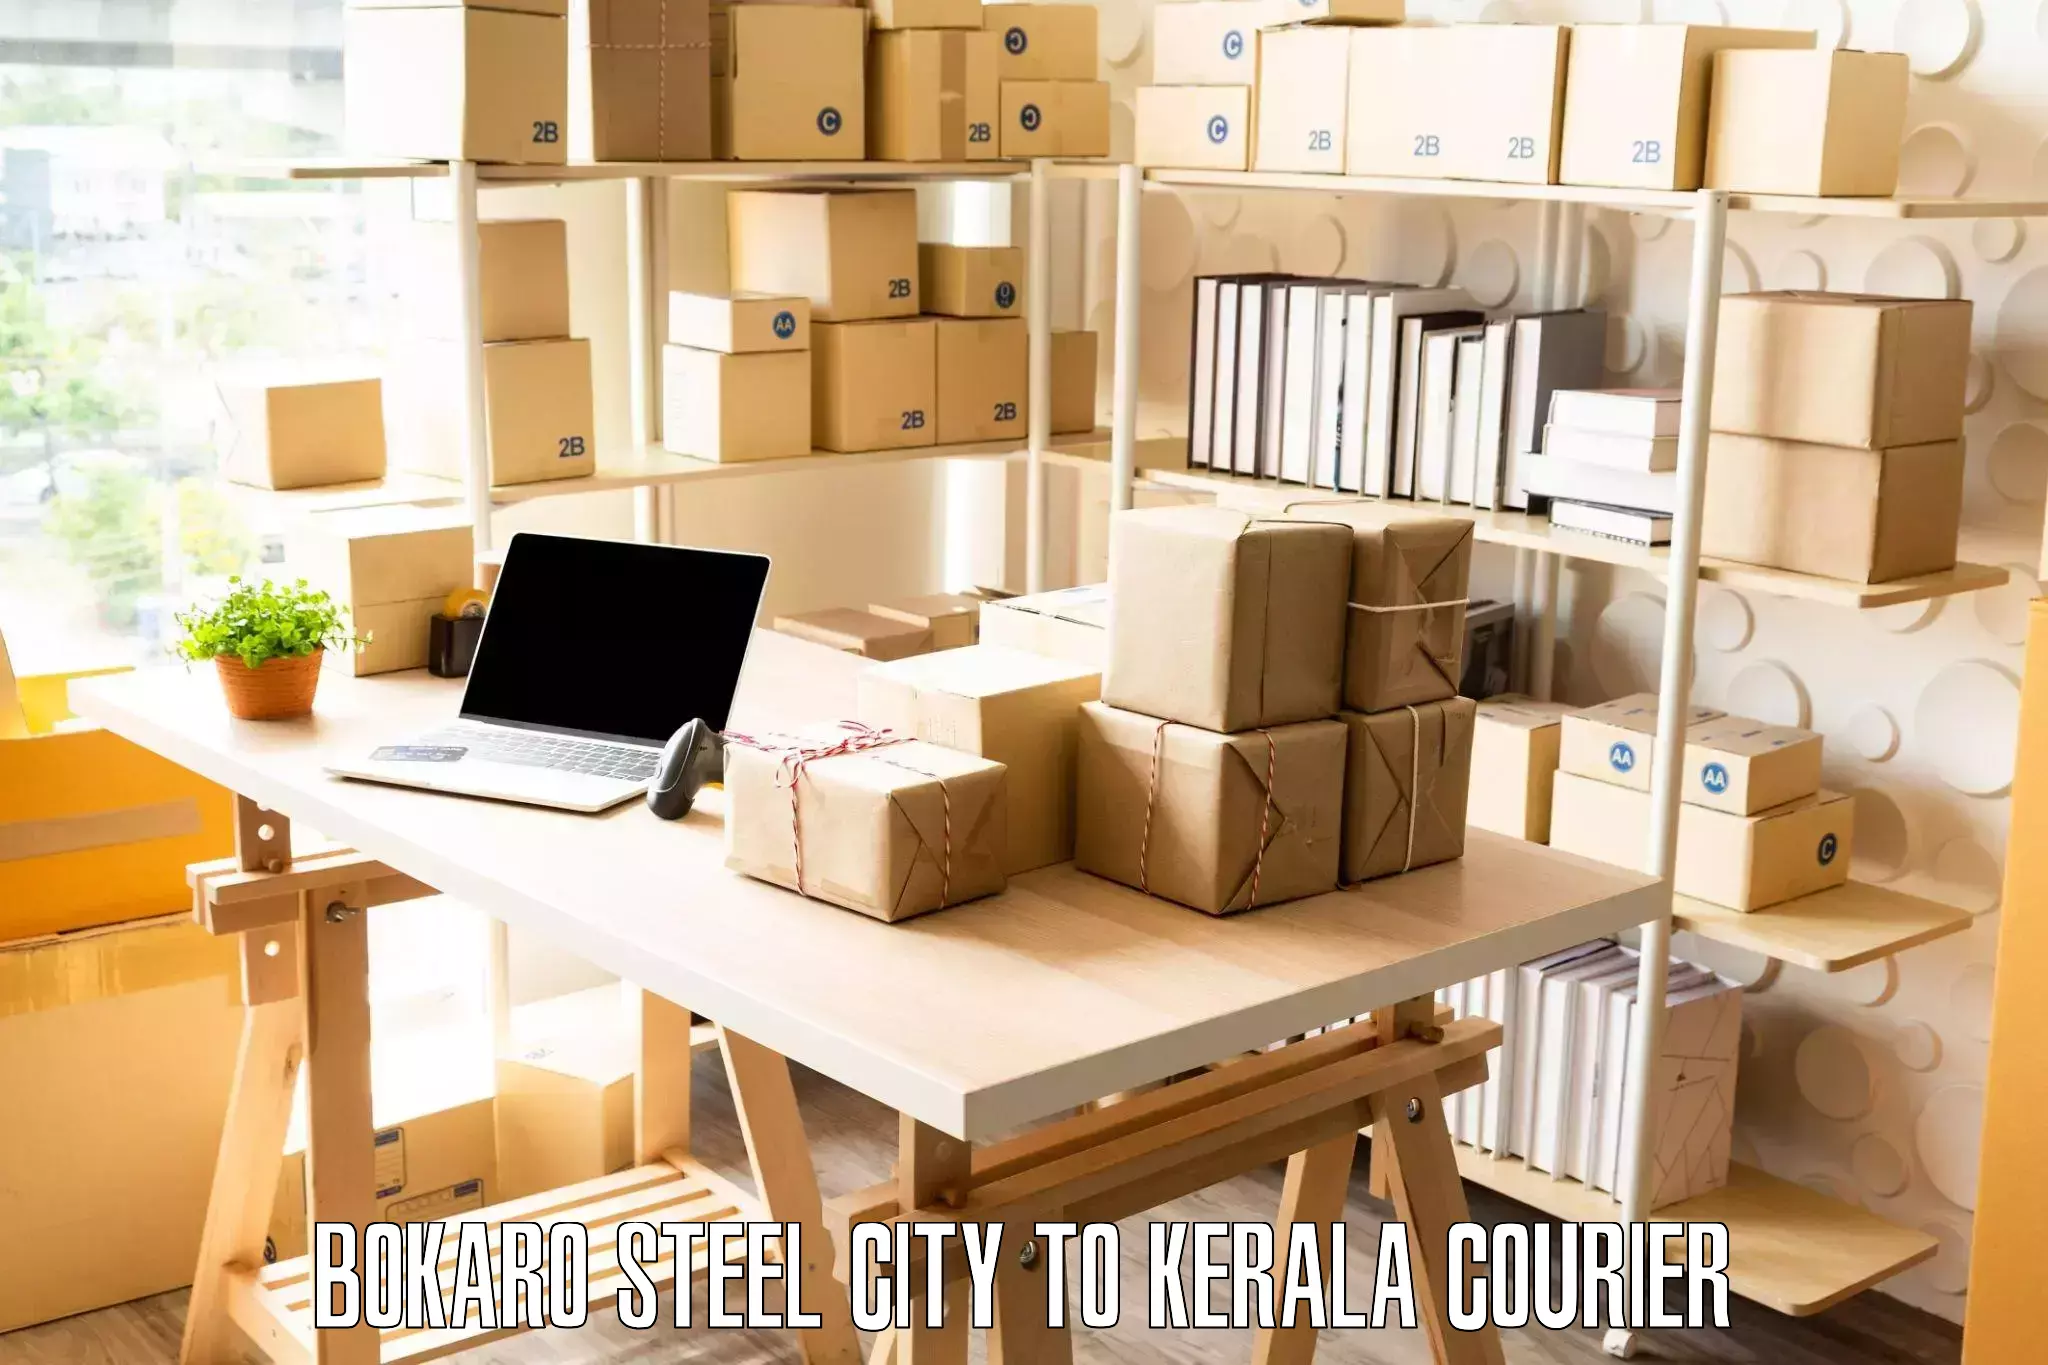 Furniture relocation experts Bokaro Steel City to Thiruvananthapuram